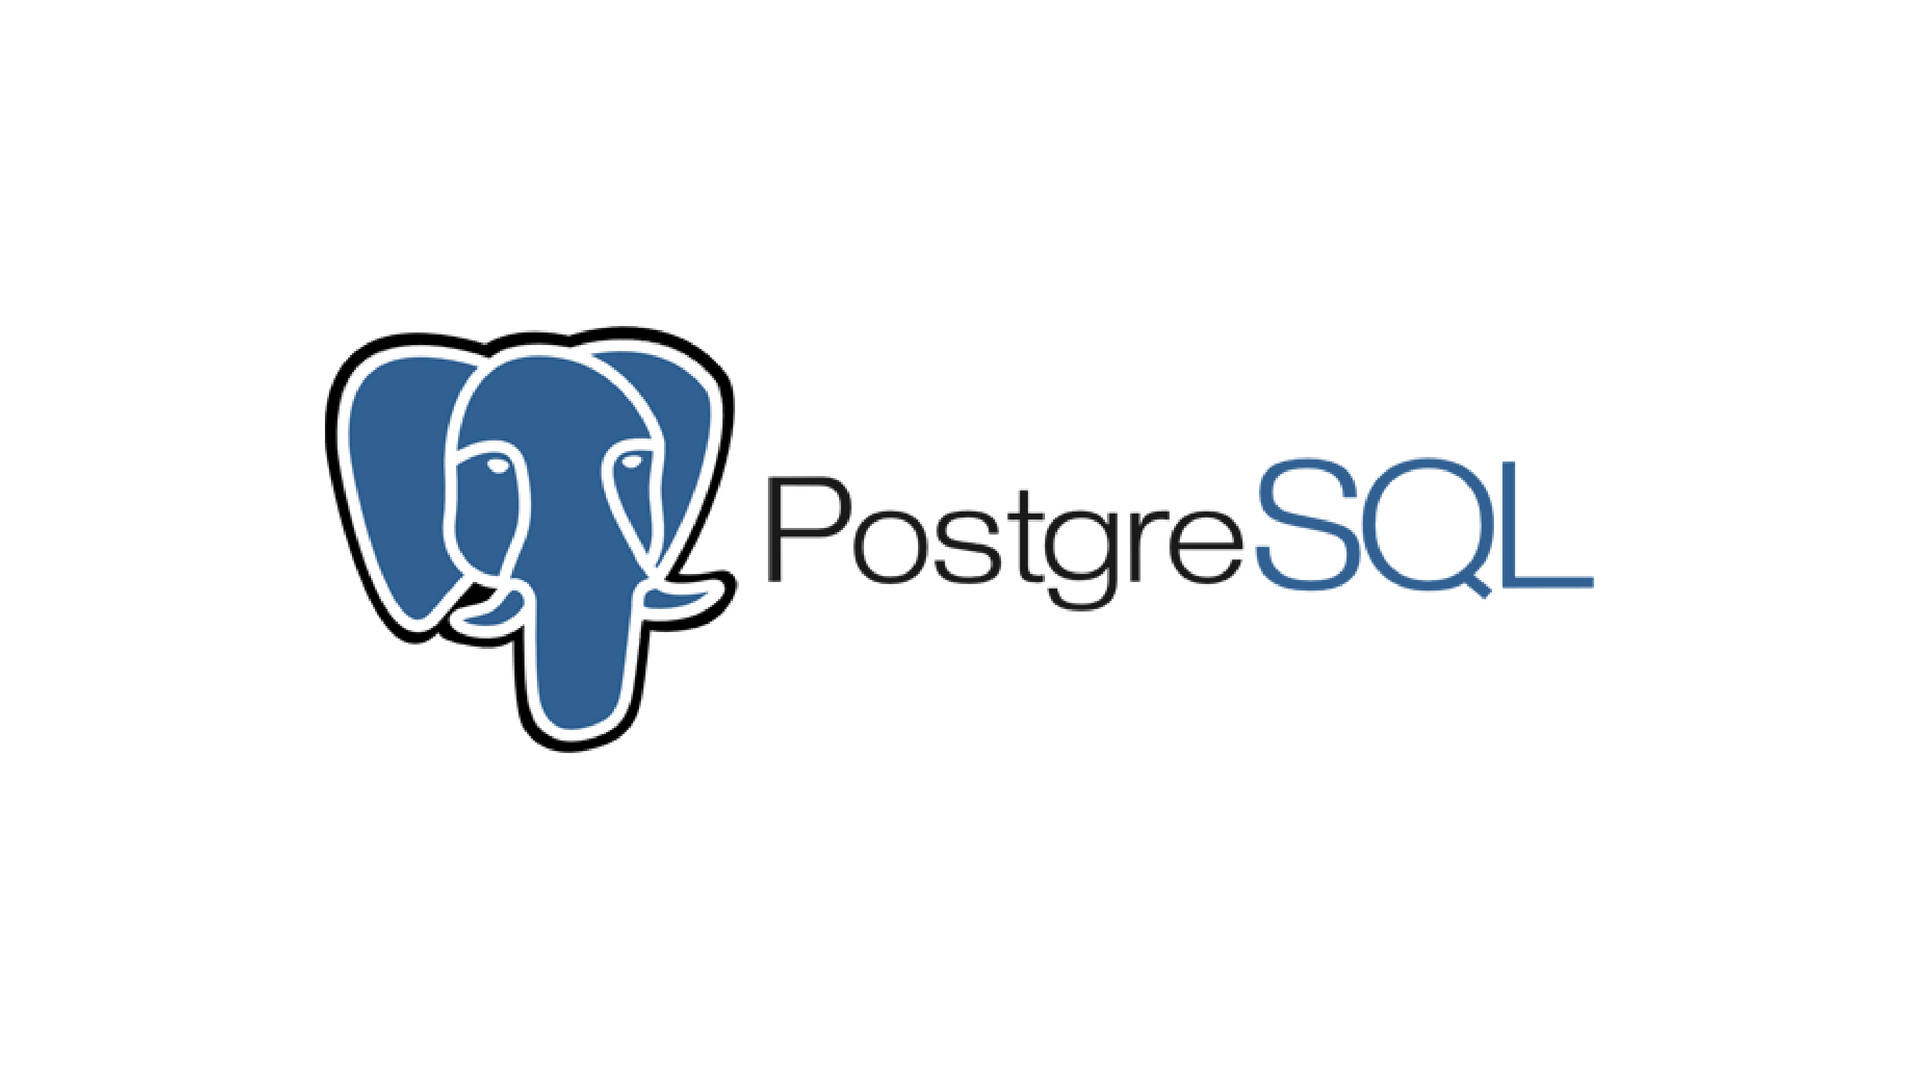 СУБД PostgreSQL: принцип работы, преимущества и недостатки